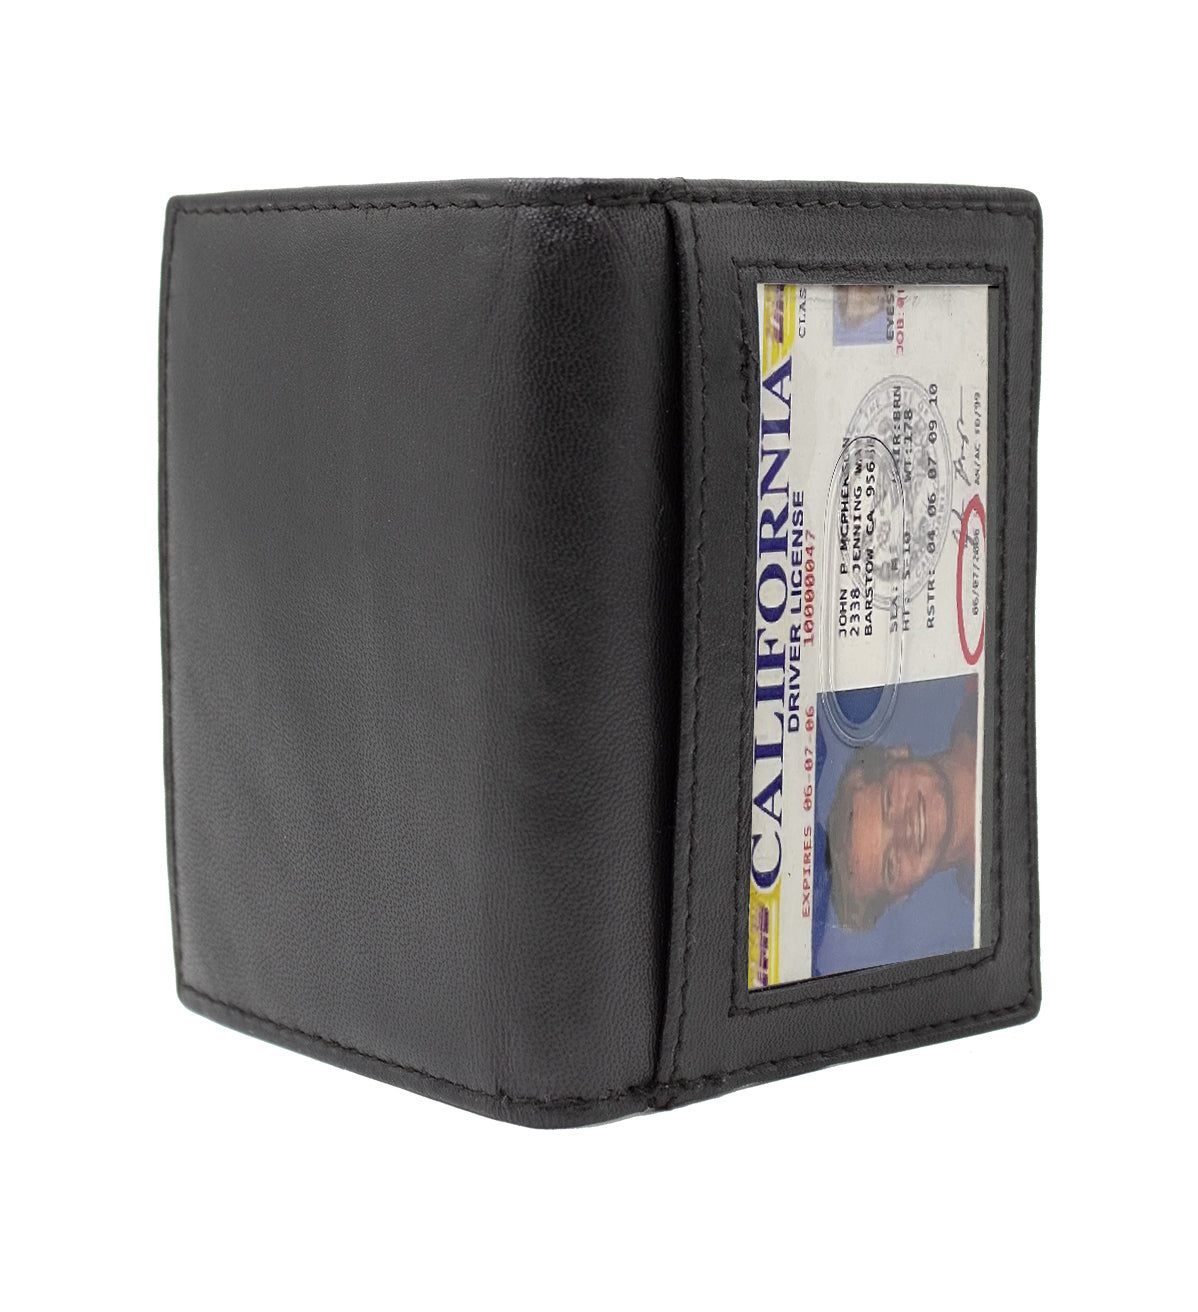 RFID Blocking Men's Genuine Leather ID License Card Bifold Billfold Holder Wallet